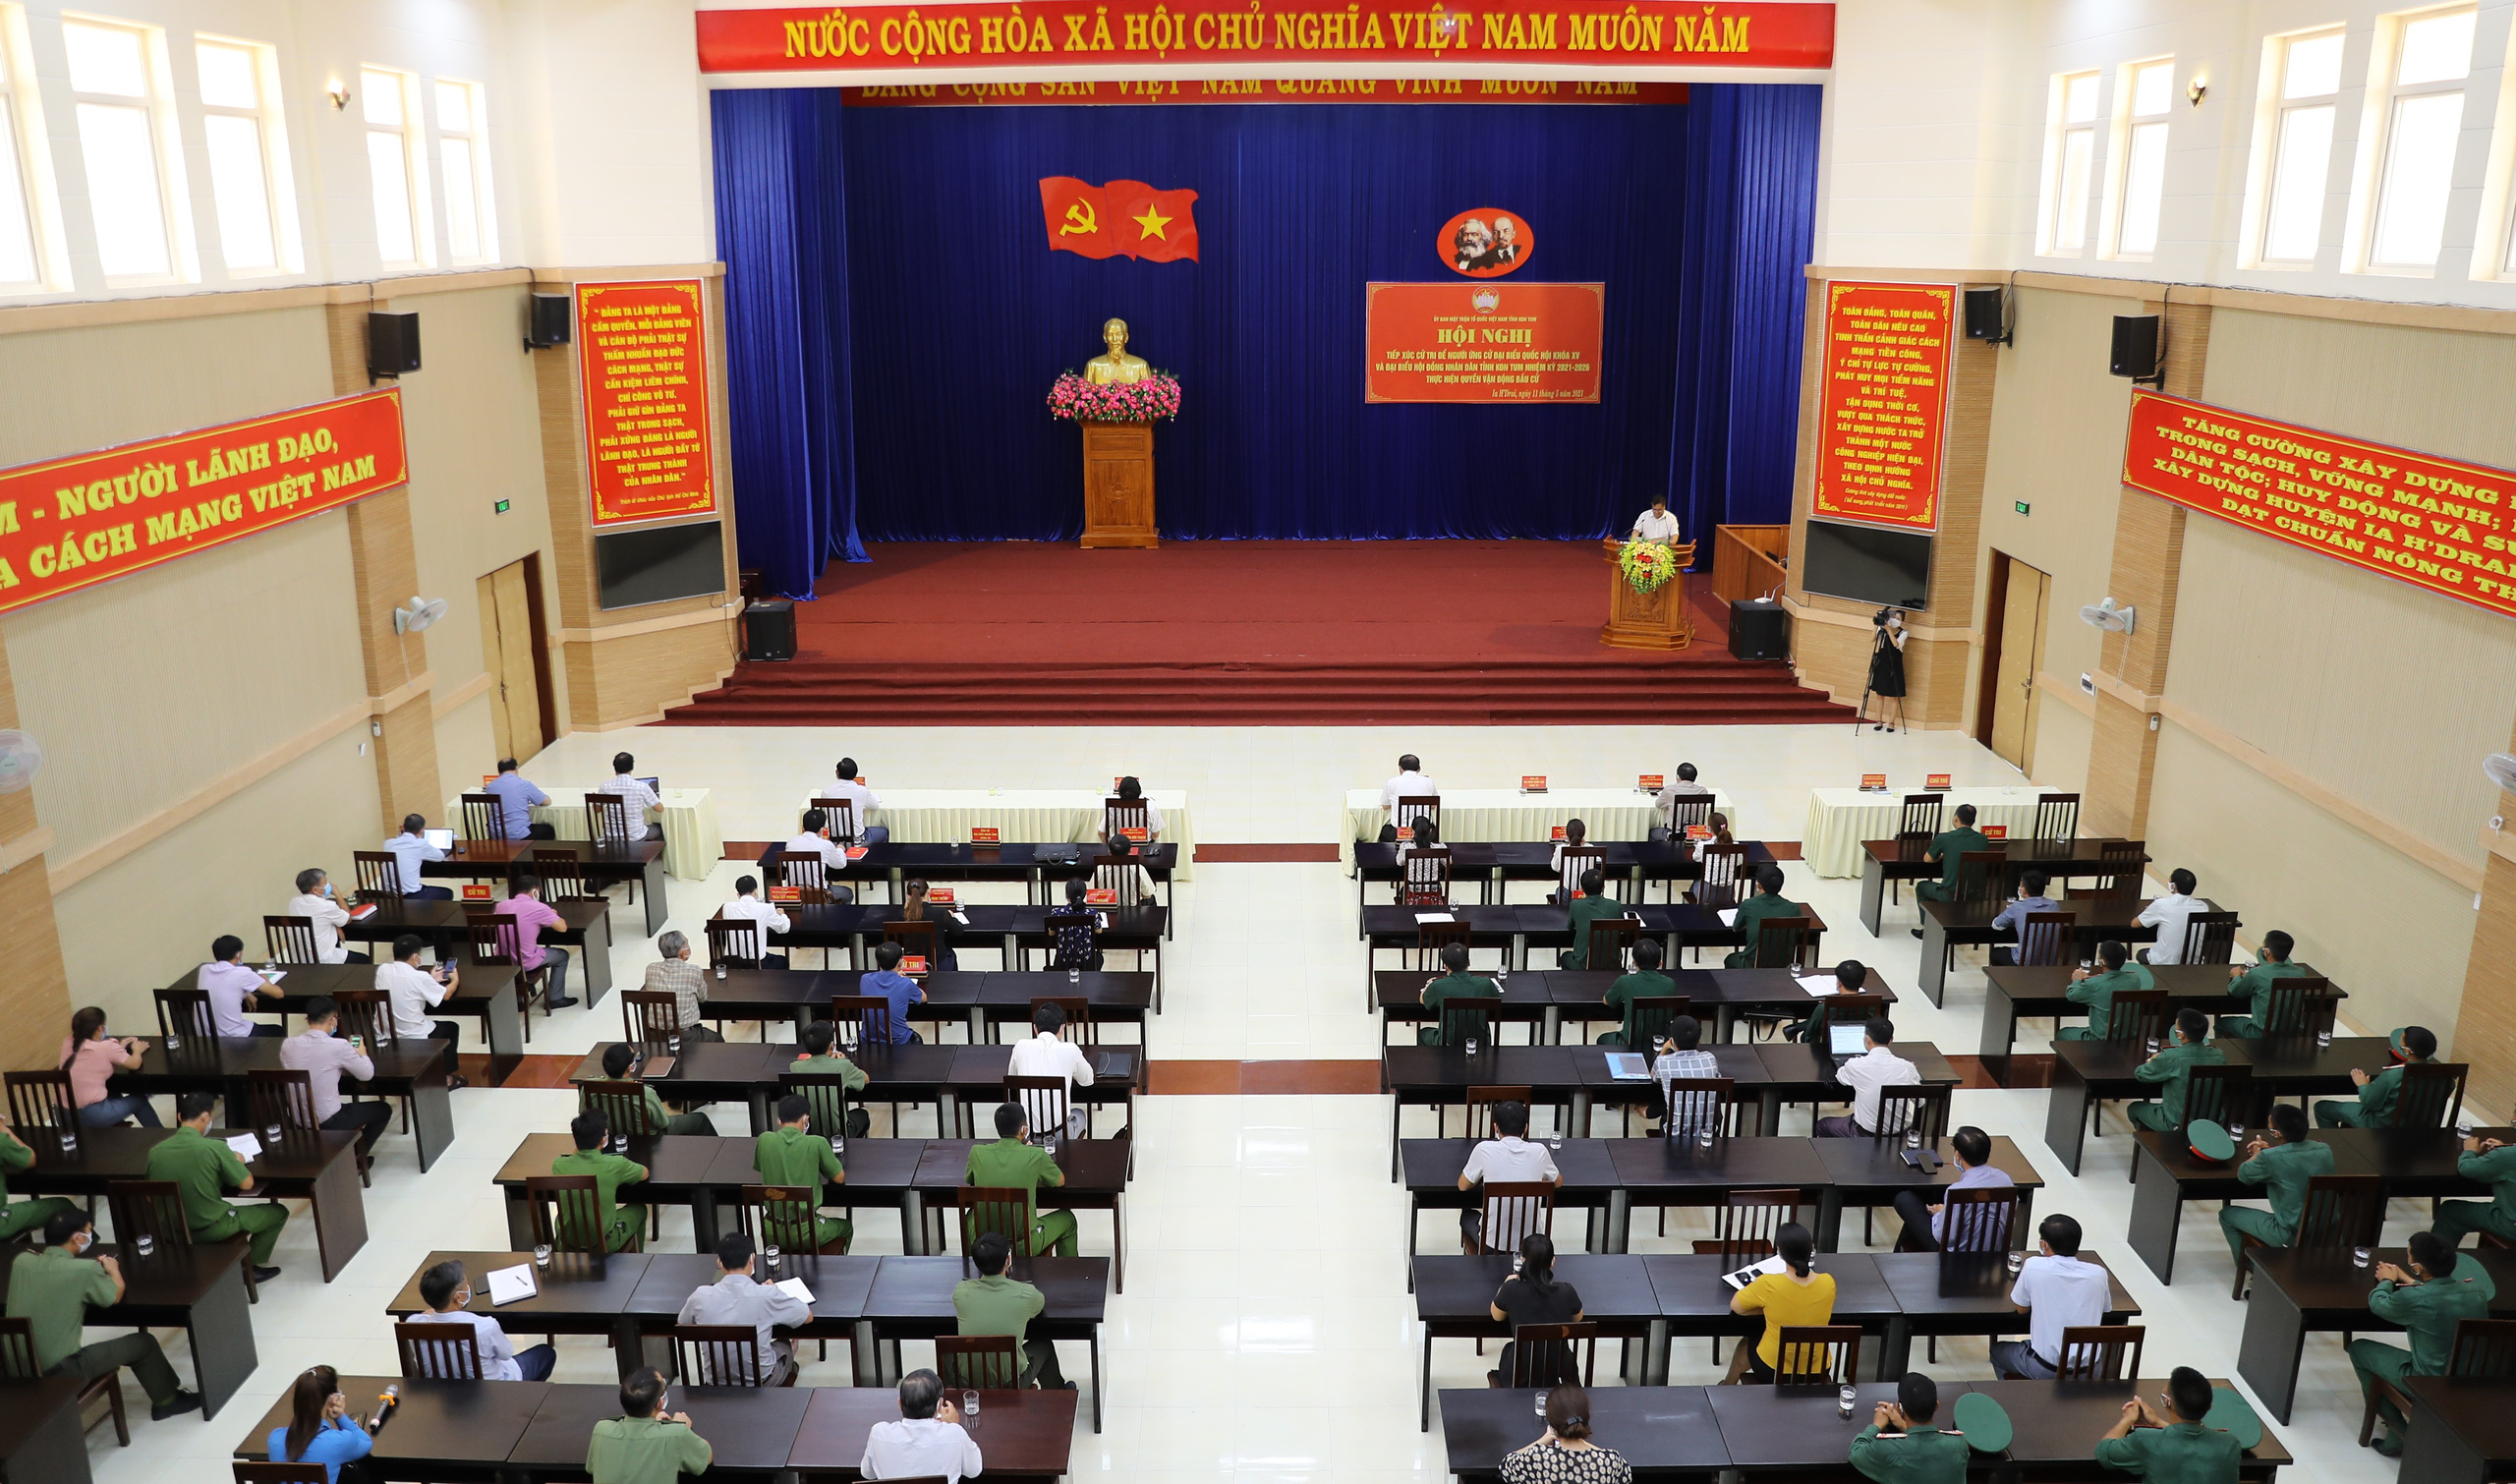 Cử tri tỉnh Kon Tum: Bộ trưởng Nguyễn Văn Hùng đã nói “đúng” và “trúng” những khó khăn, tồn tại của địa phương - Ảnh 4.